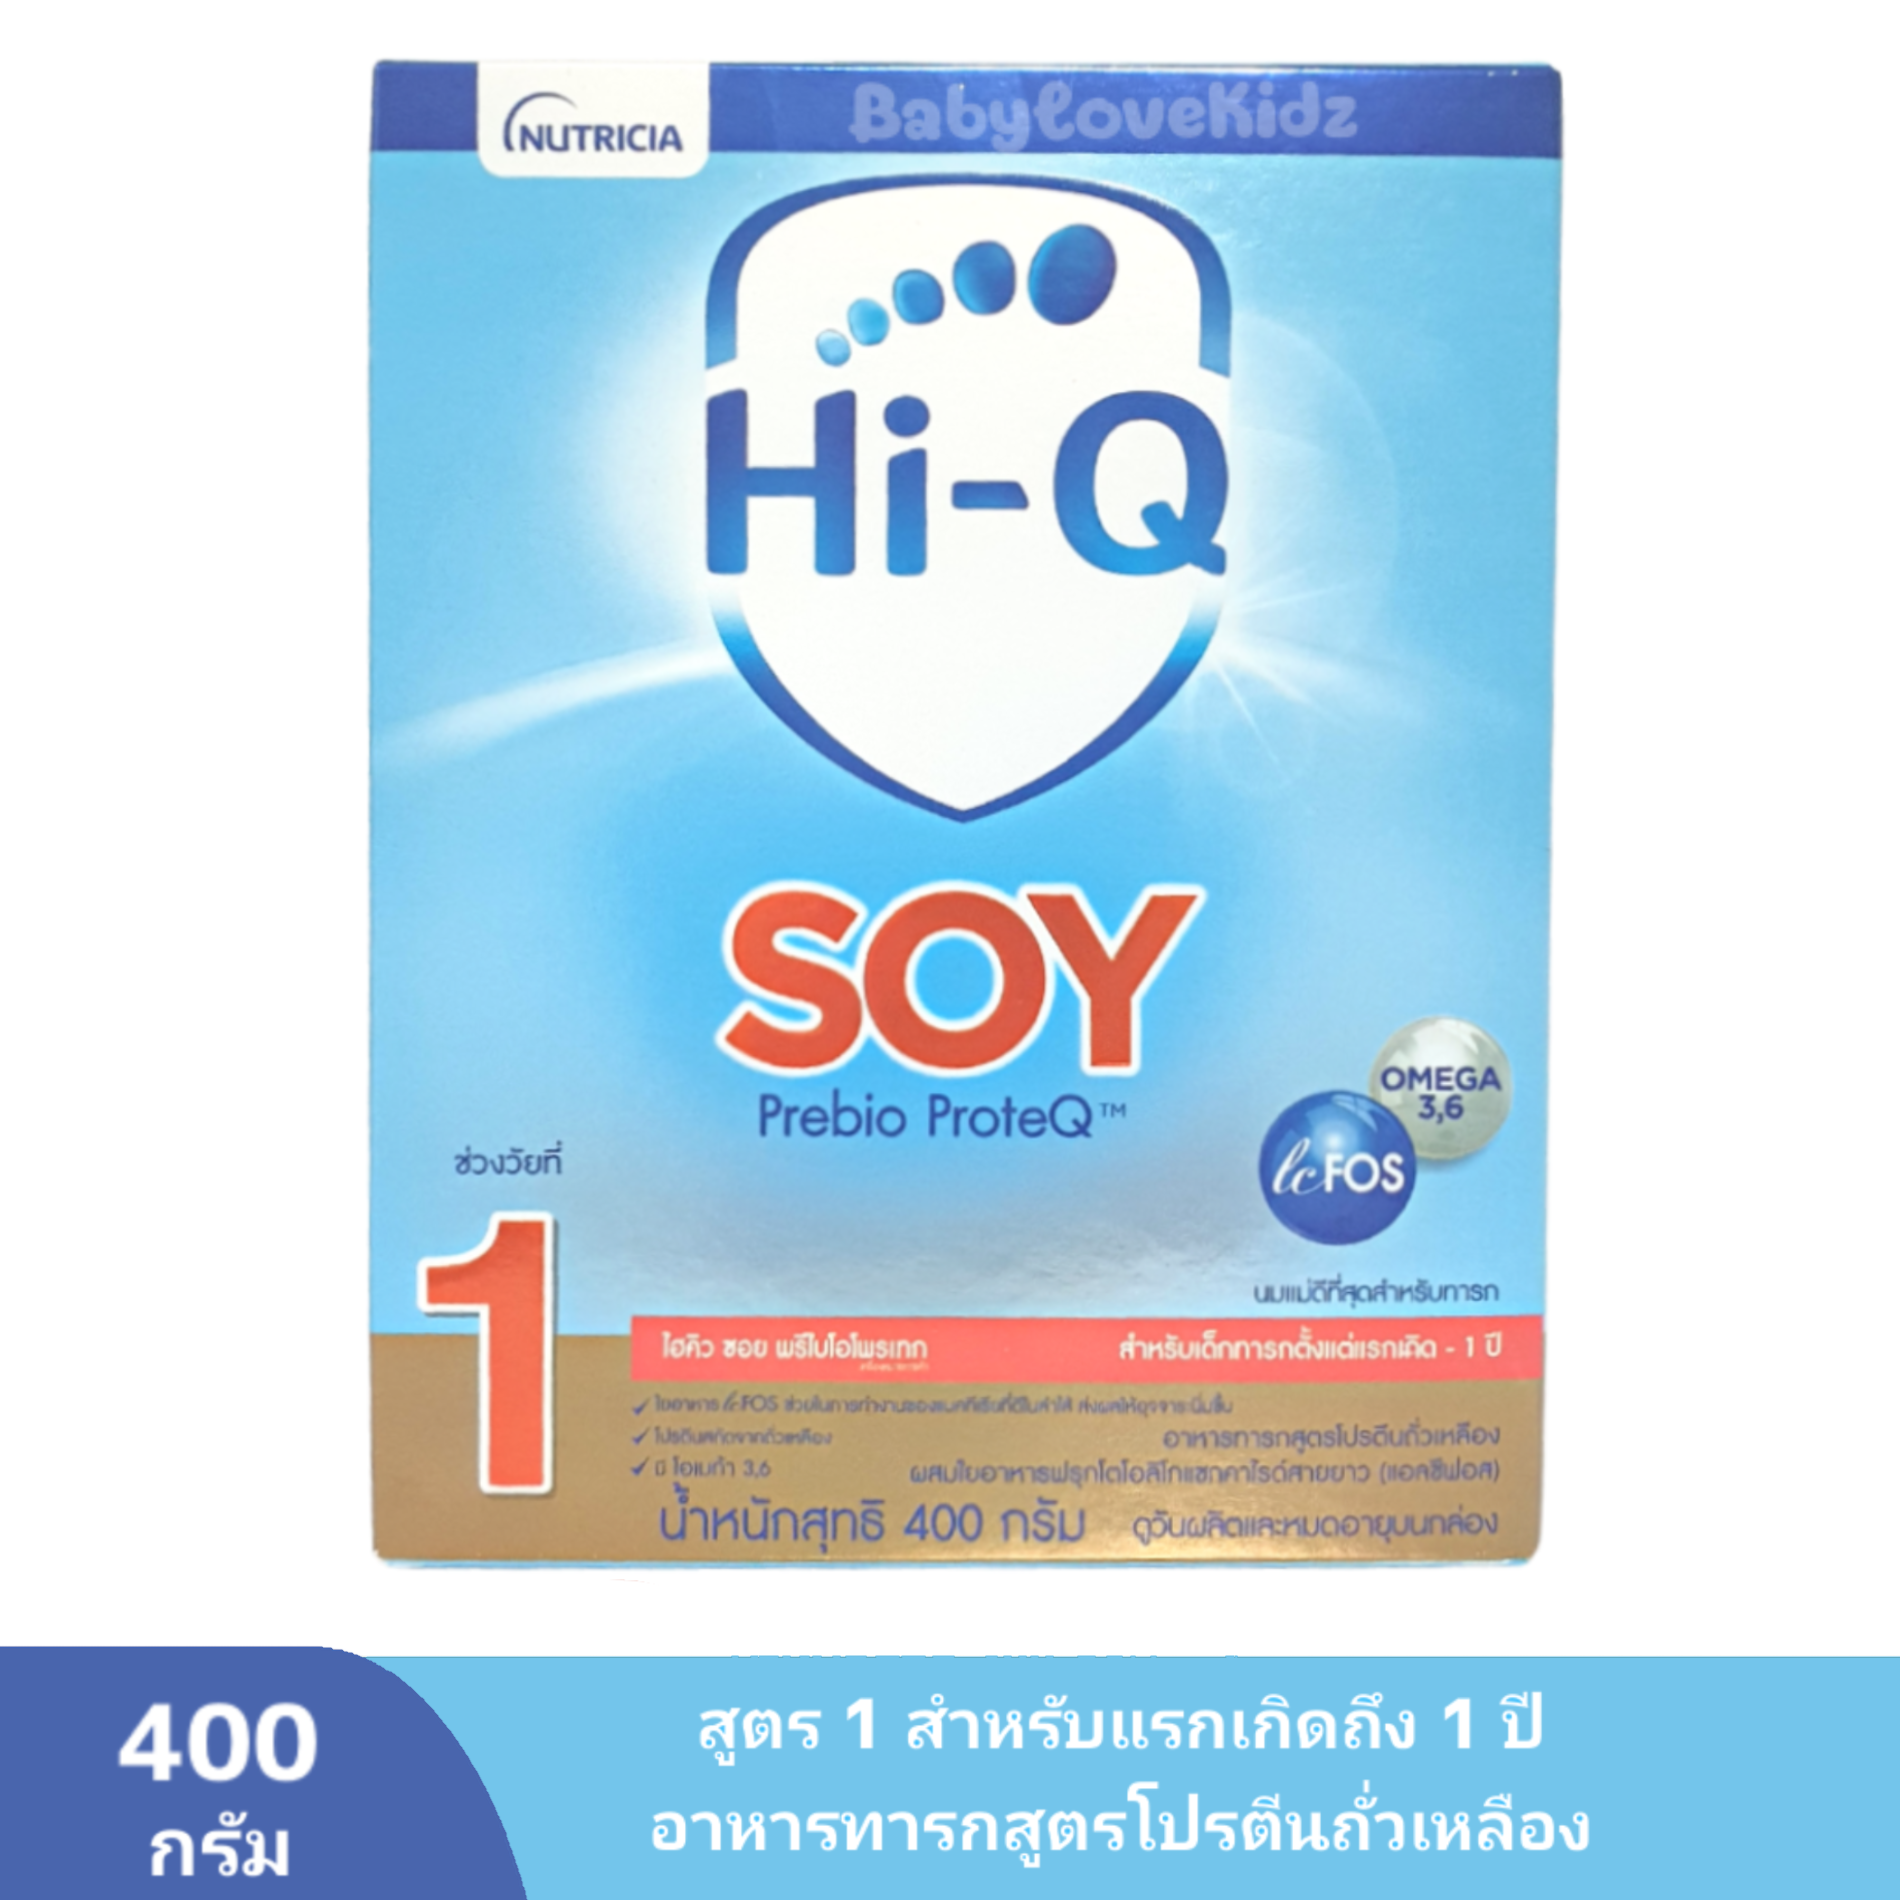 คำอธิบายเพิ่มเติมเกี่ยวกับ ส่งฟรี - นมผง Hi q soy ไฮคิวซอย พรีไบโอโพรเทก สูตร 1 Hi-Q Soy Prebio ProteQ ขนาด 400 กรัม Hi q soy 1